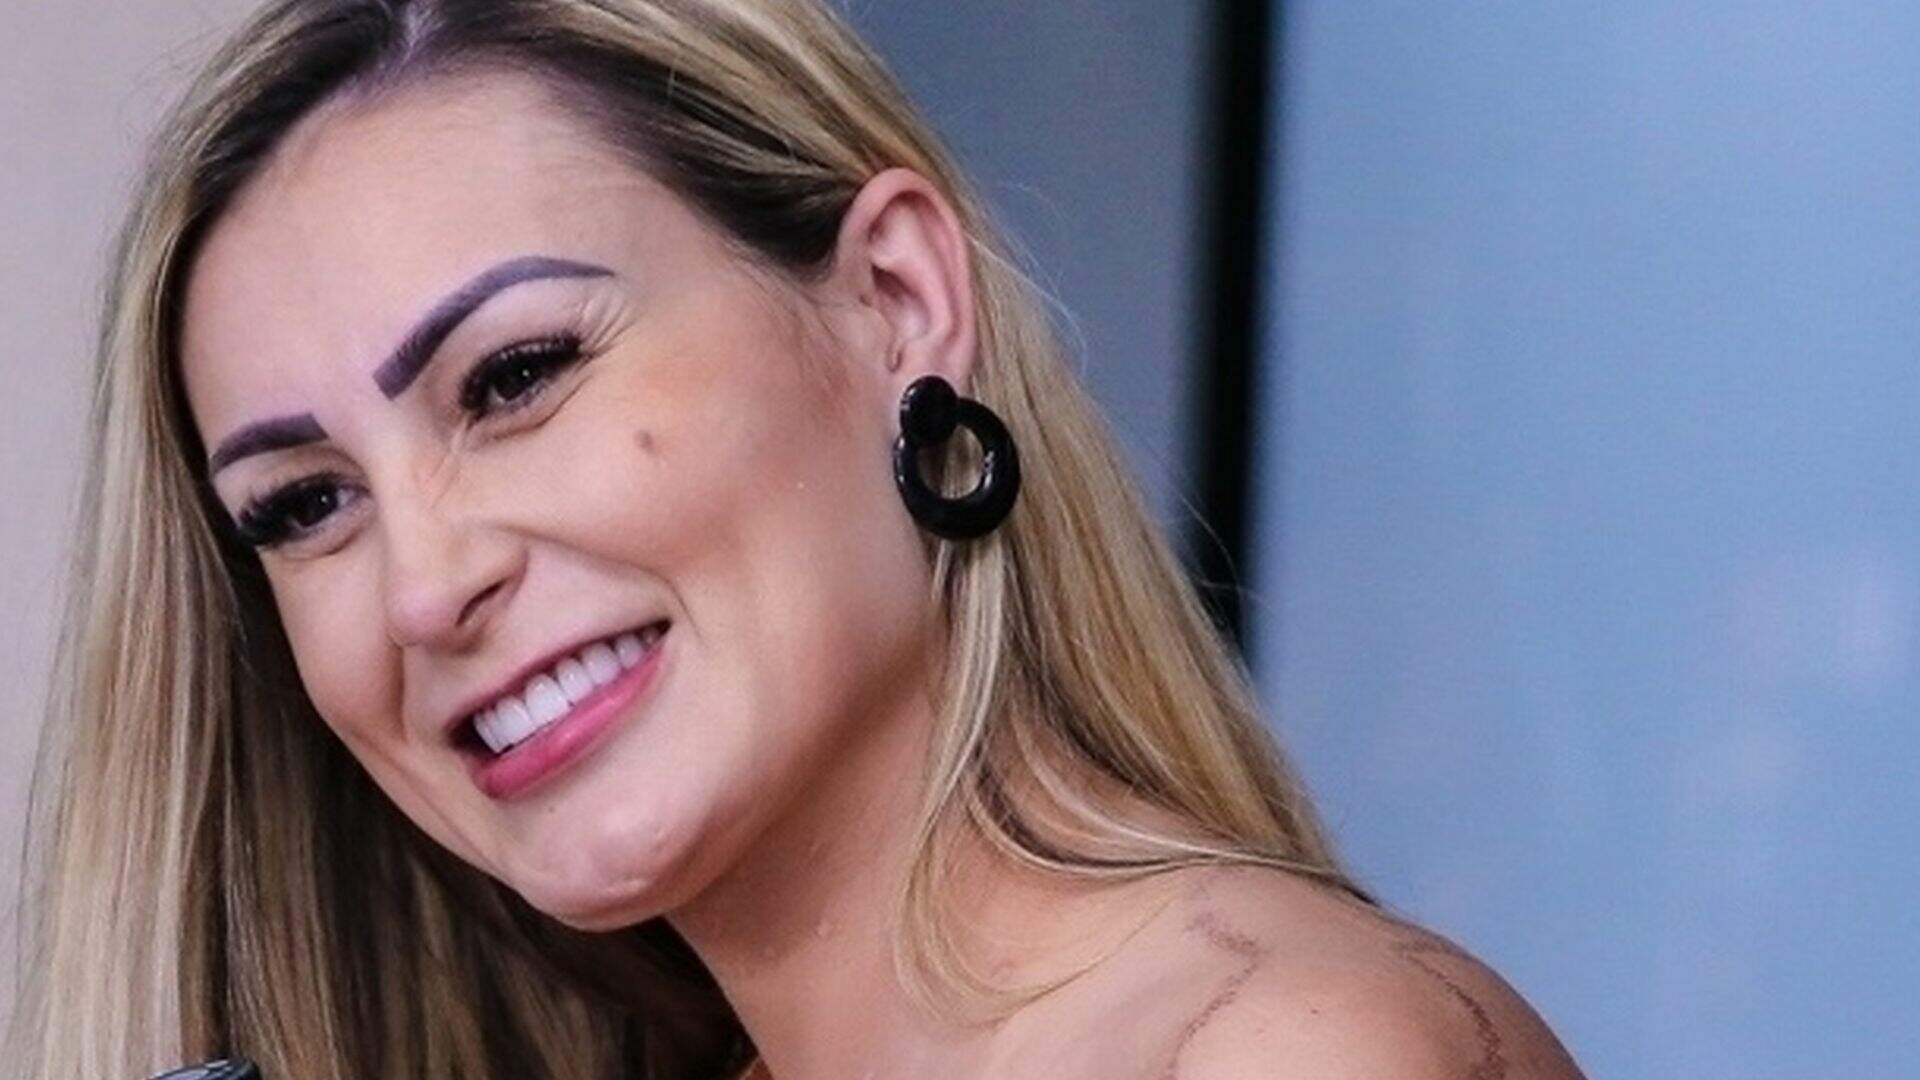 Após 10 anos, Andressa Urach divulga fotos chocantes de ensaio em revista adulta internacional - Metropolitana FM